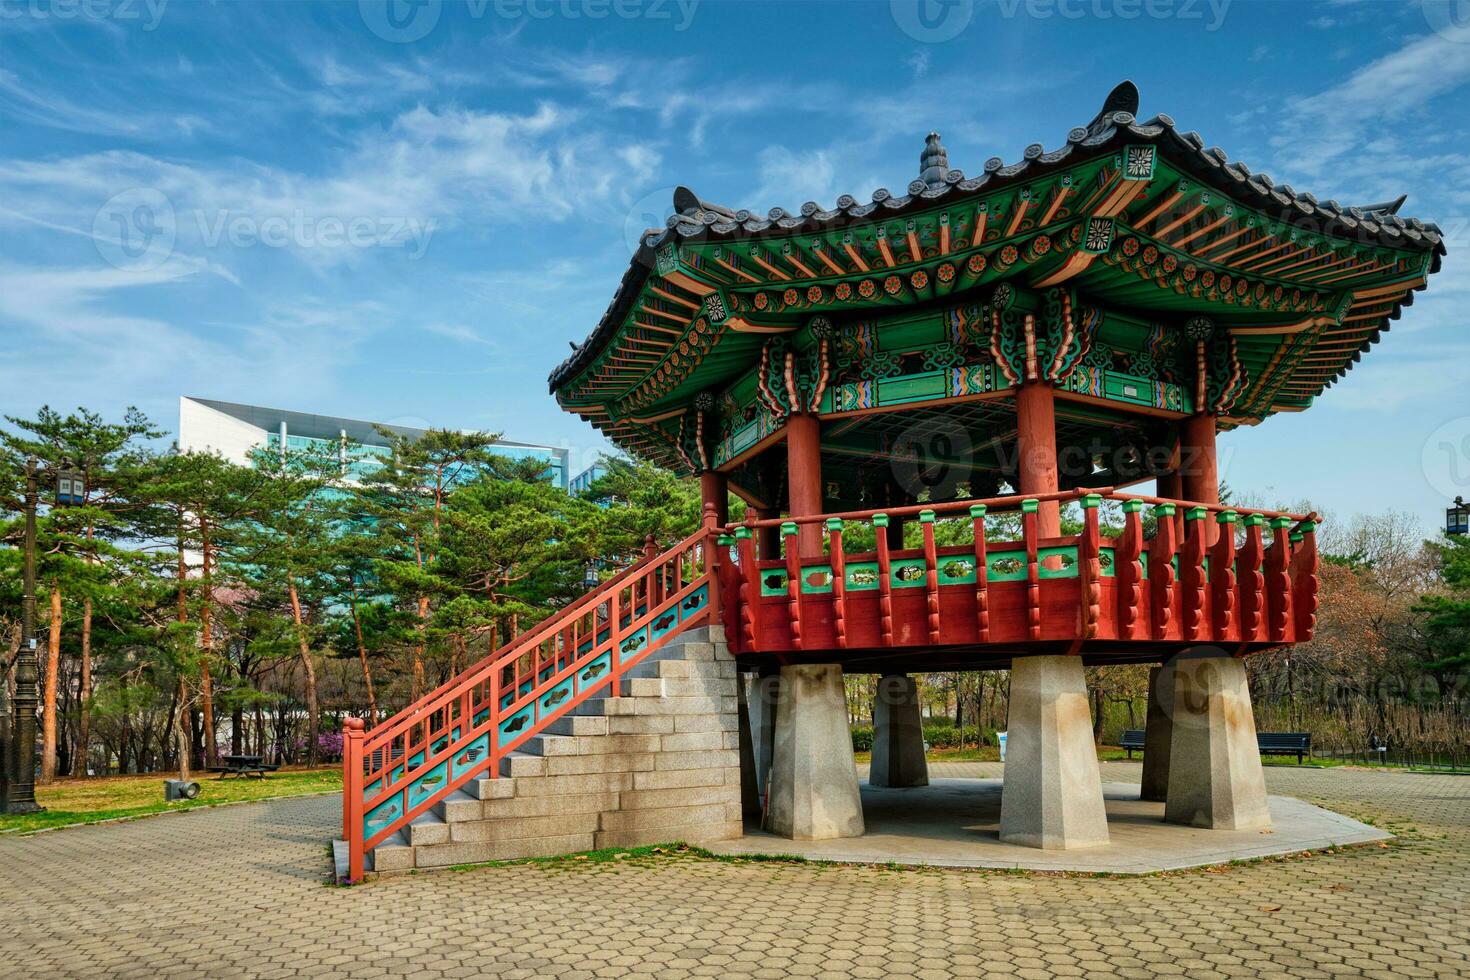 youido parc dans Séoul, Corée photo